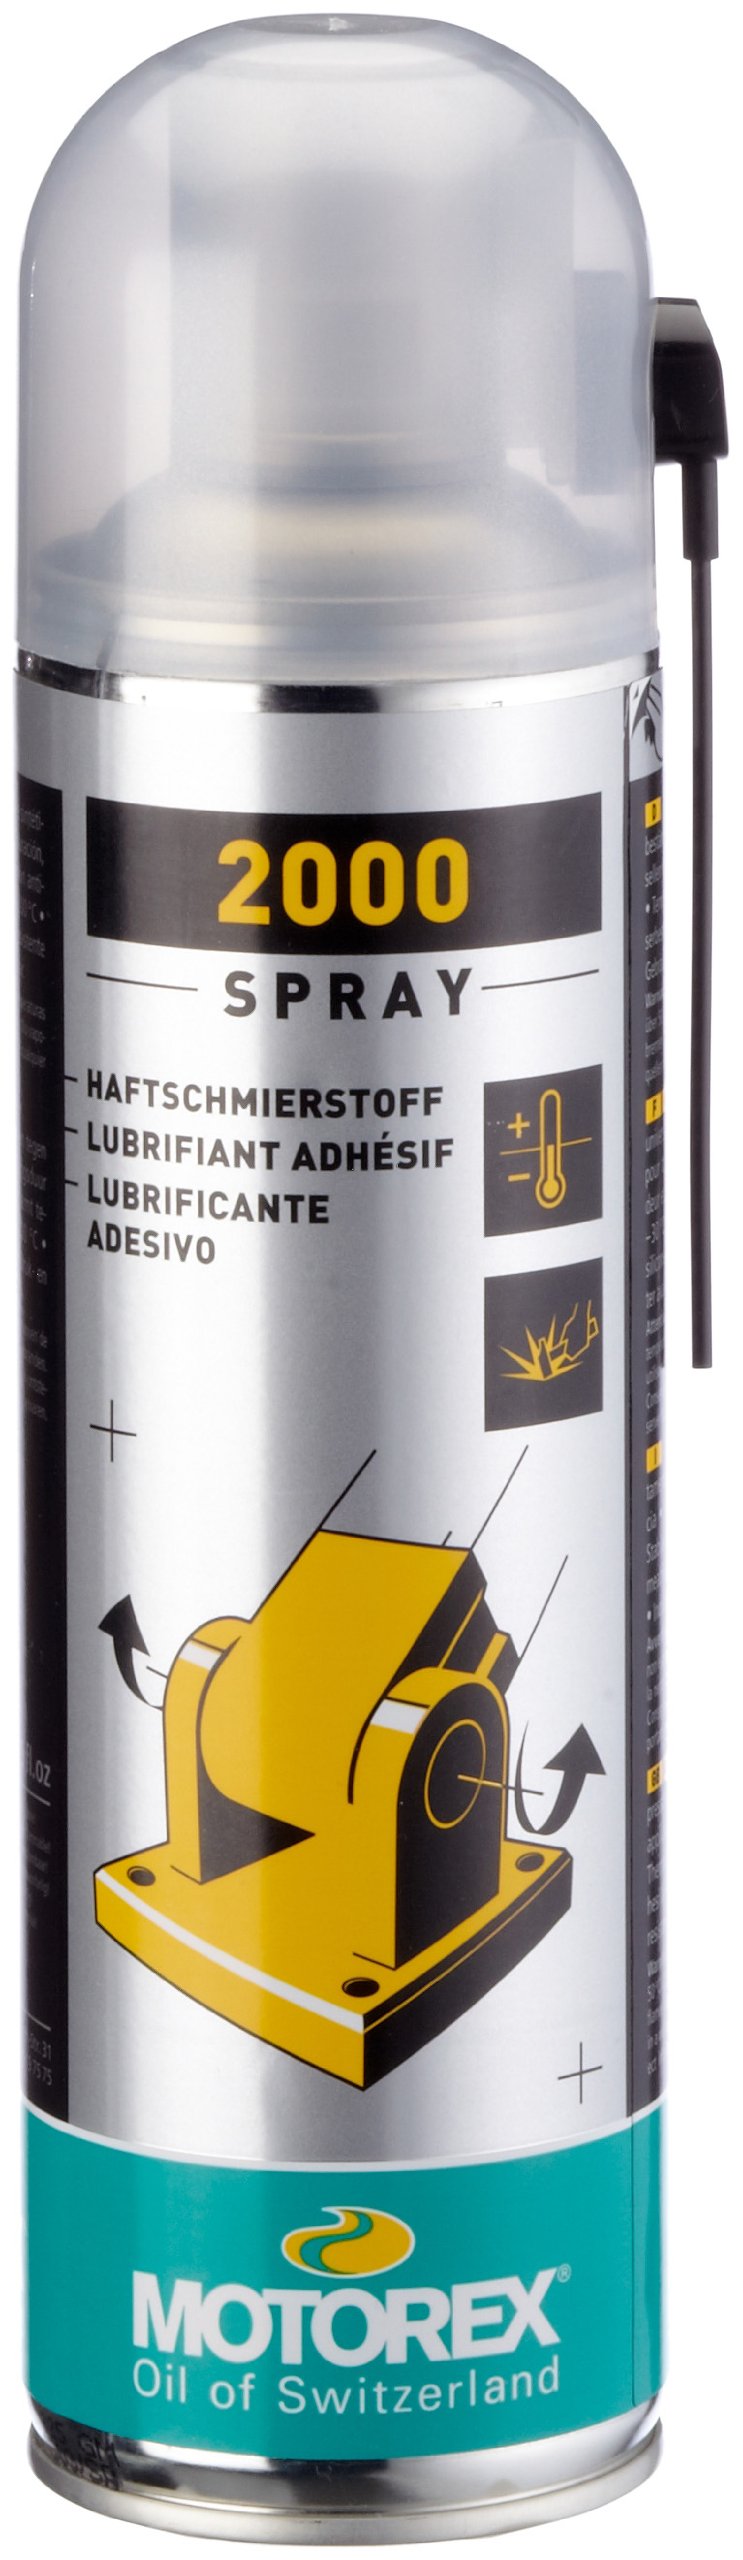 Motorex 302271 Spray 2000 Spray 0,5l von Motorex